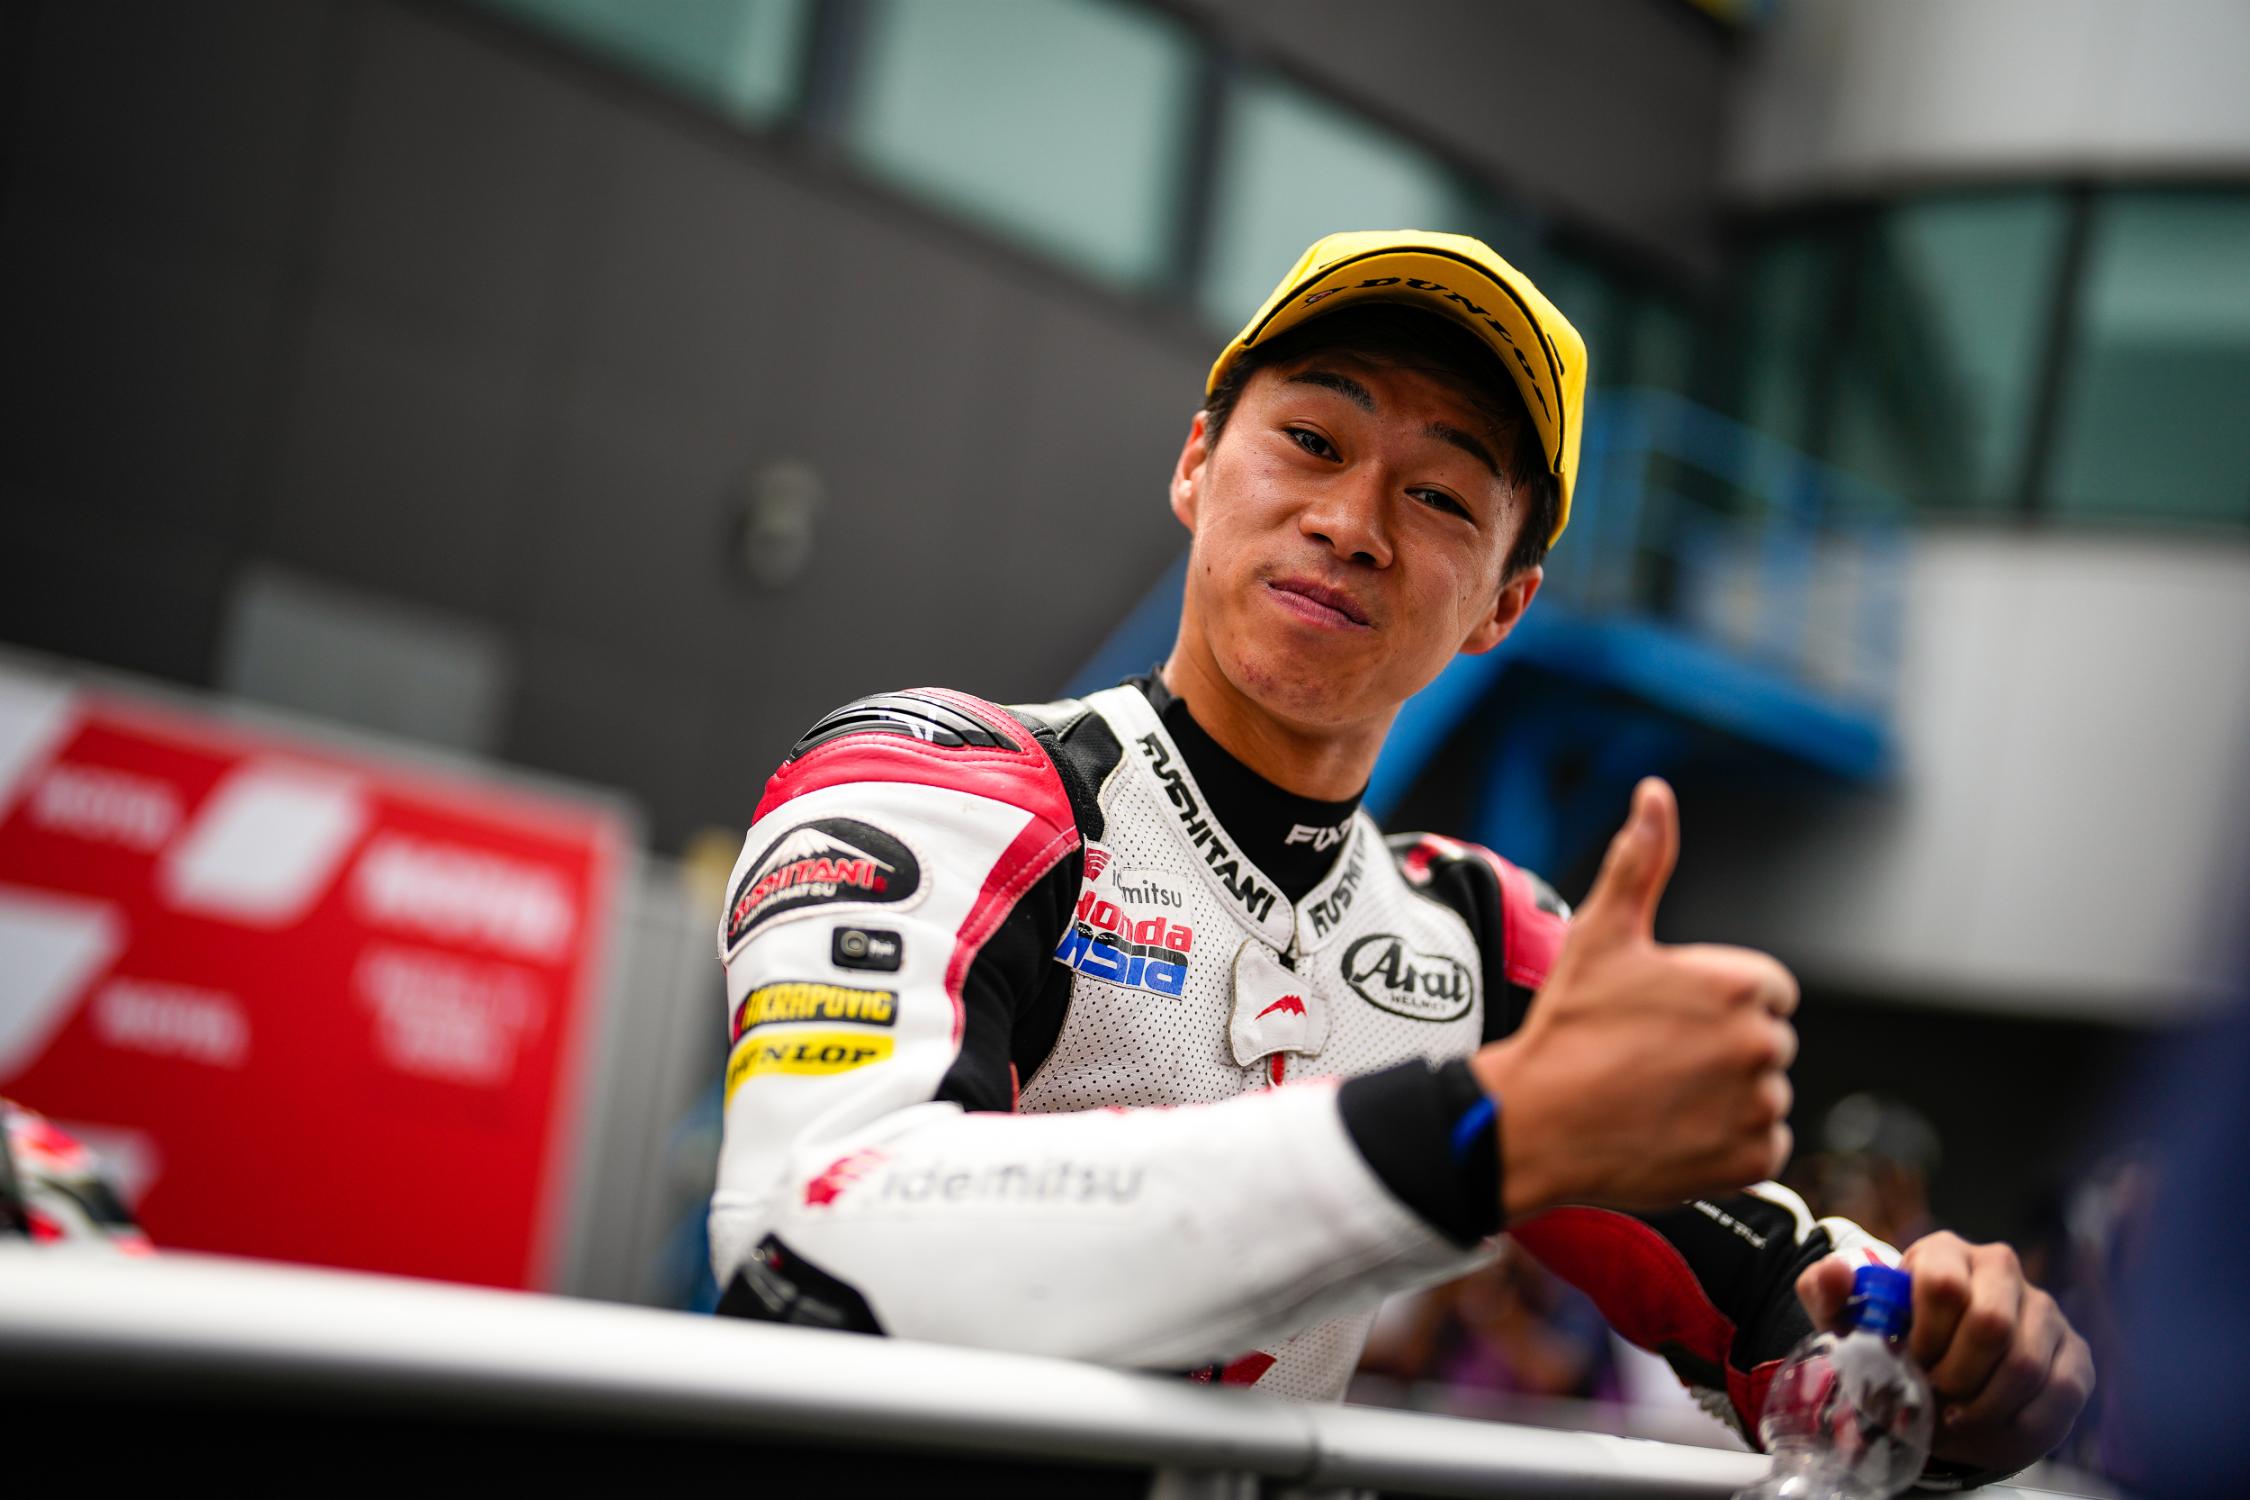 Qualificação de Moto2 na Áustria: excelente qualificação para Ai Ogura que conquista a pole